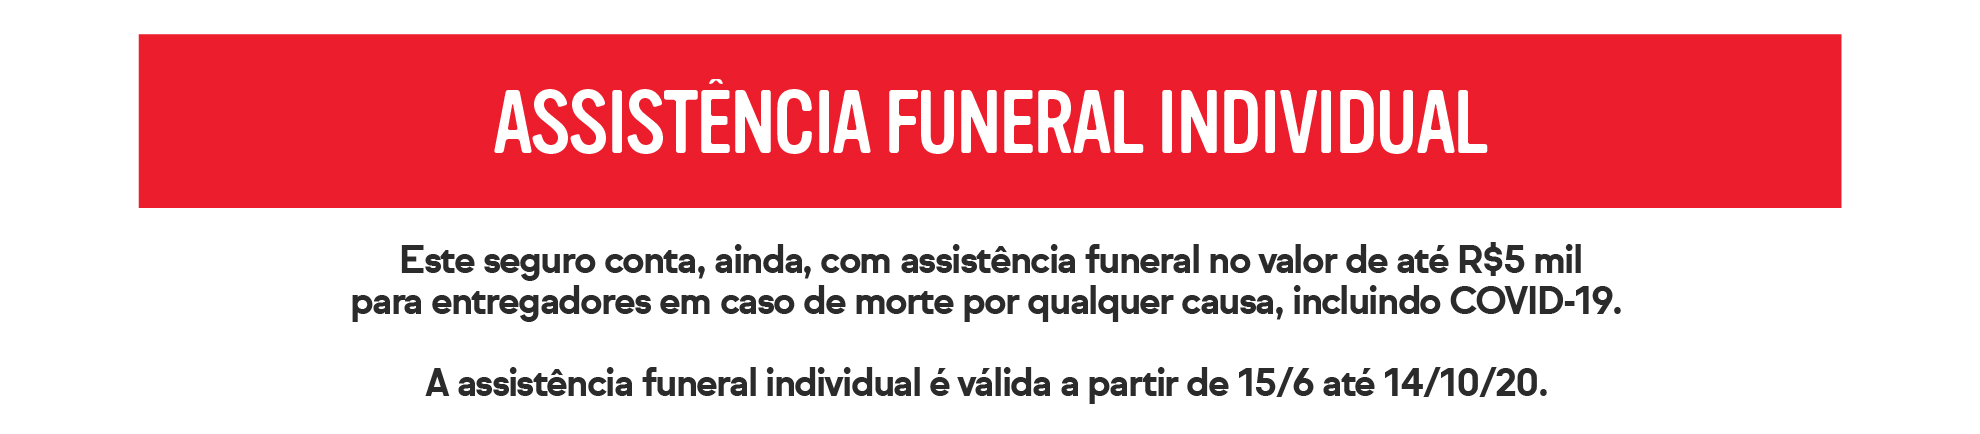 assistência funeral individual